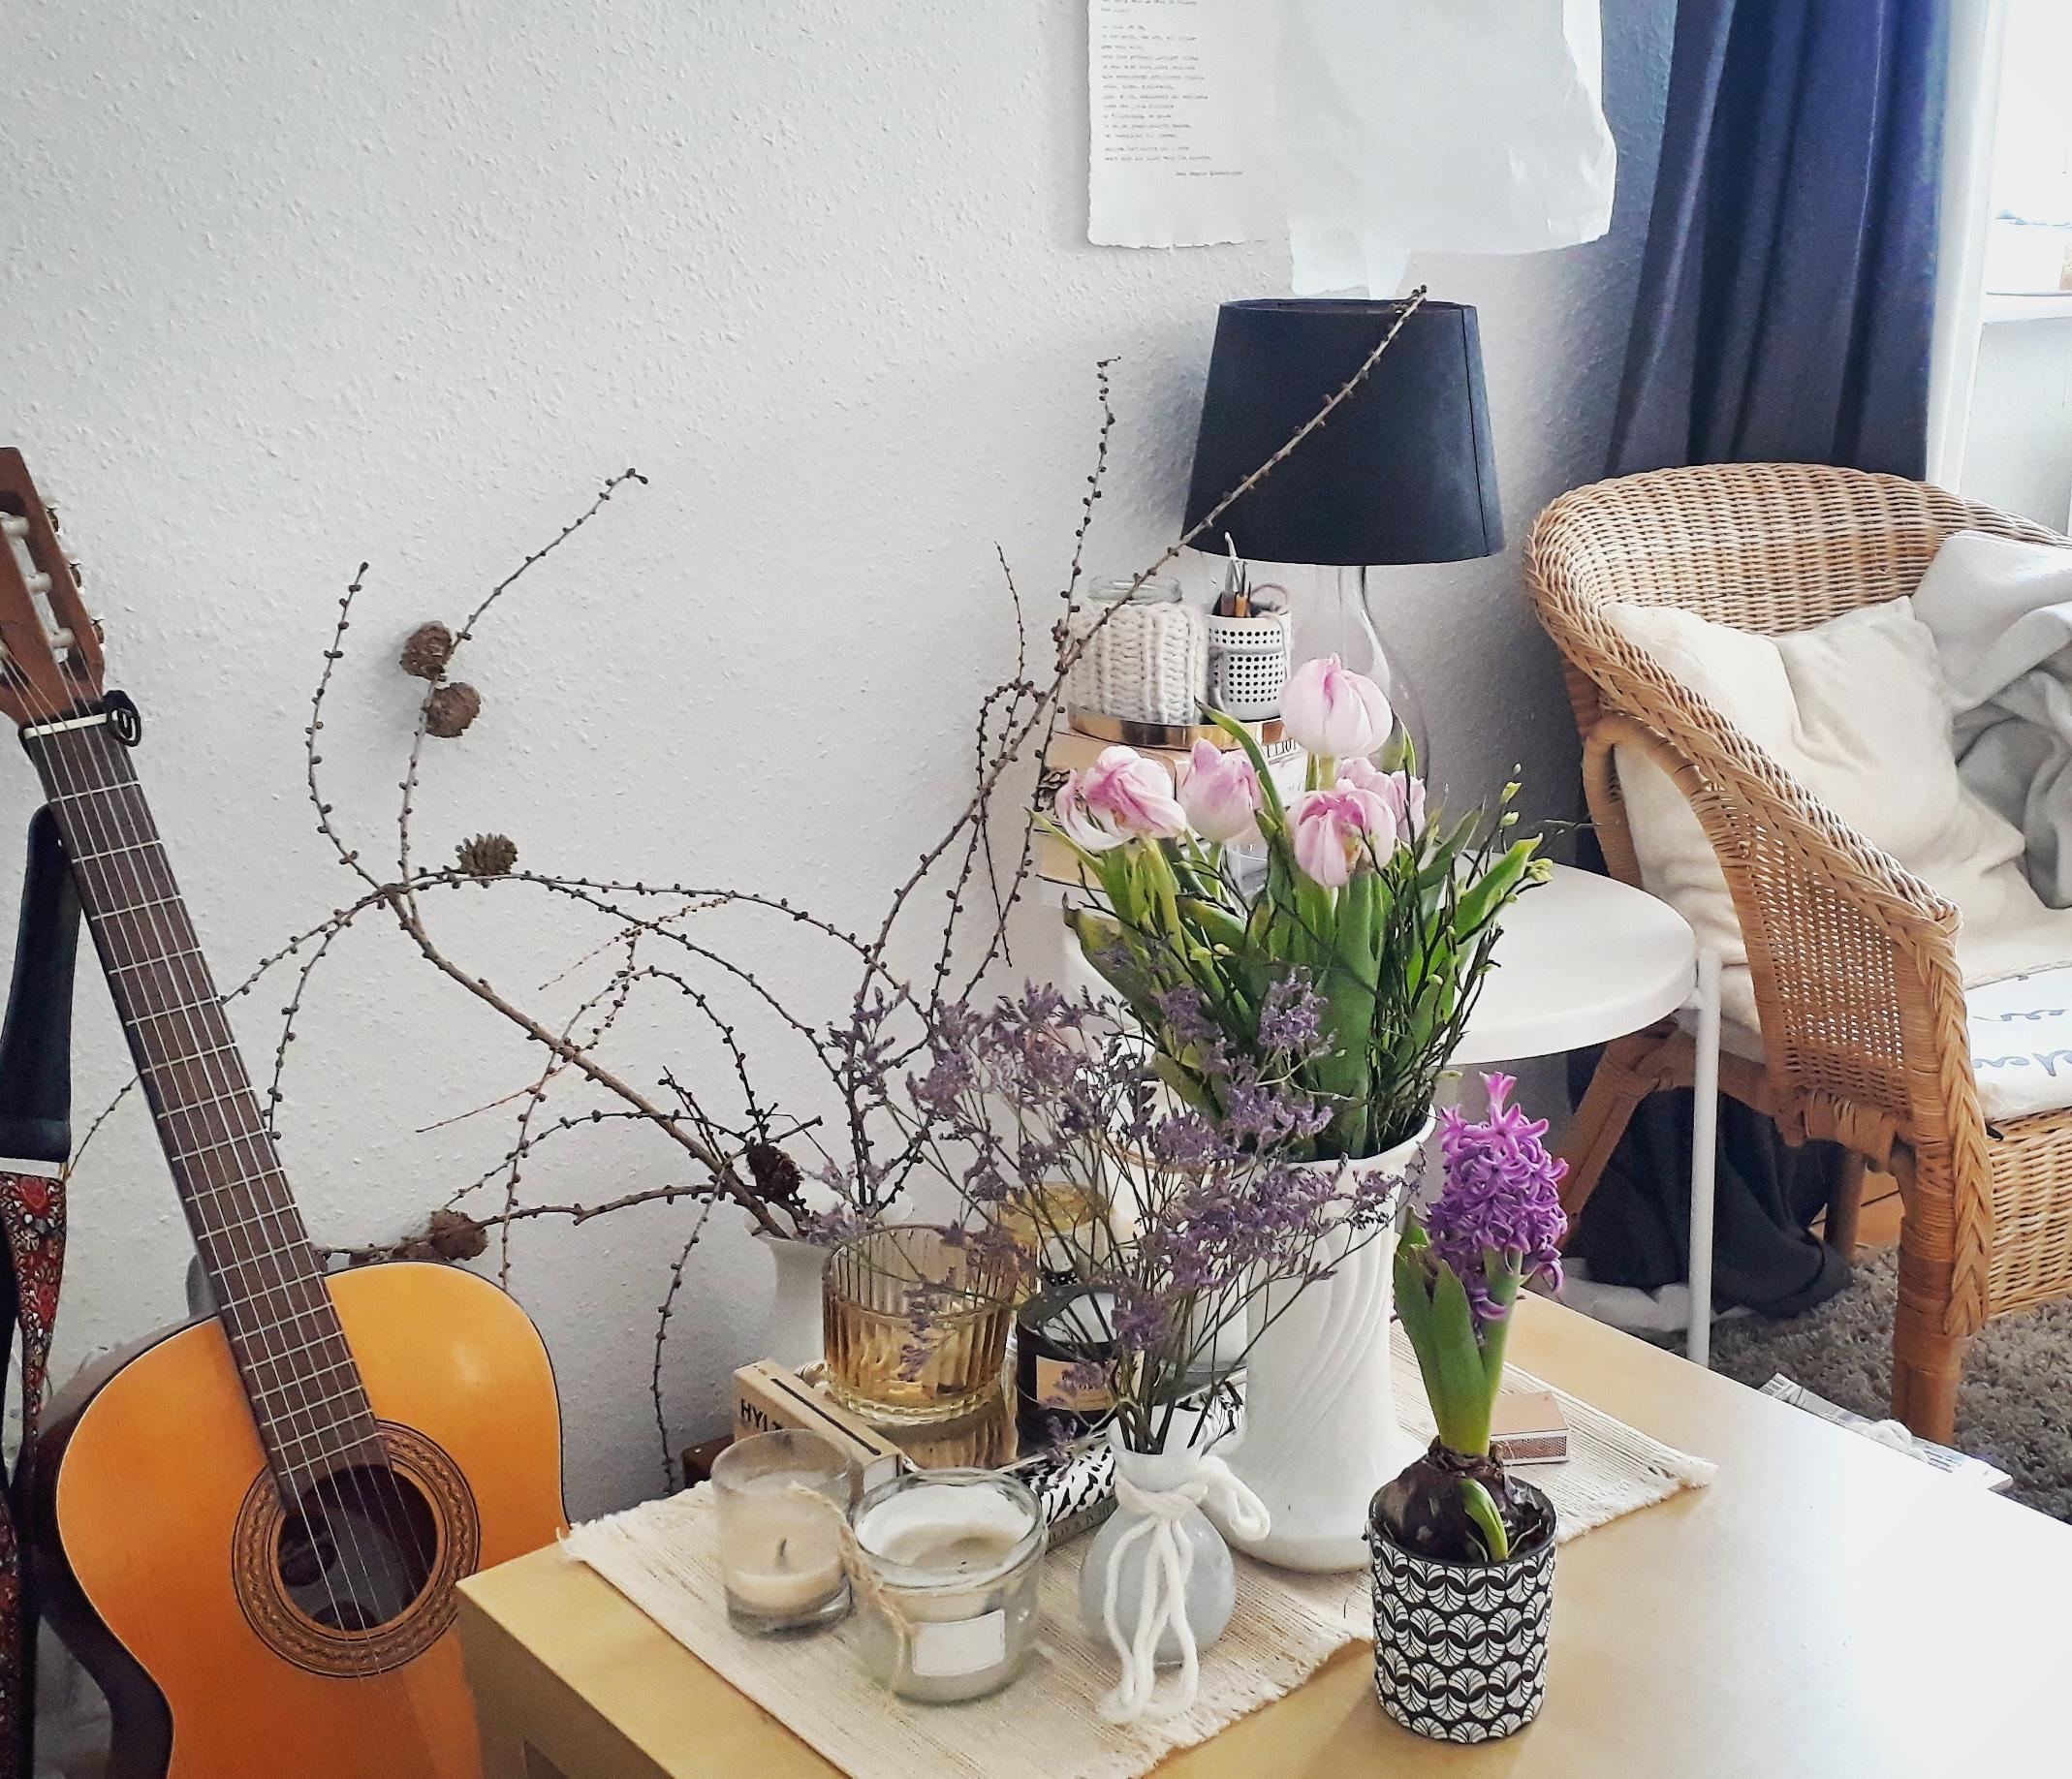 Auf dem Weg in den #frühling ... 😍
#blumen #trockenblumen #freshflowers #couchtisch #flowers #guitar #music #happiness 